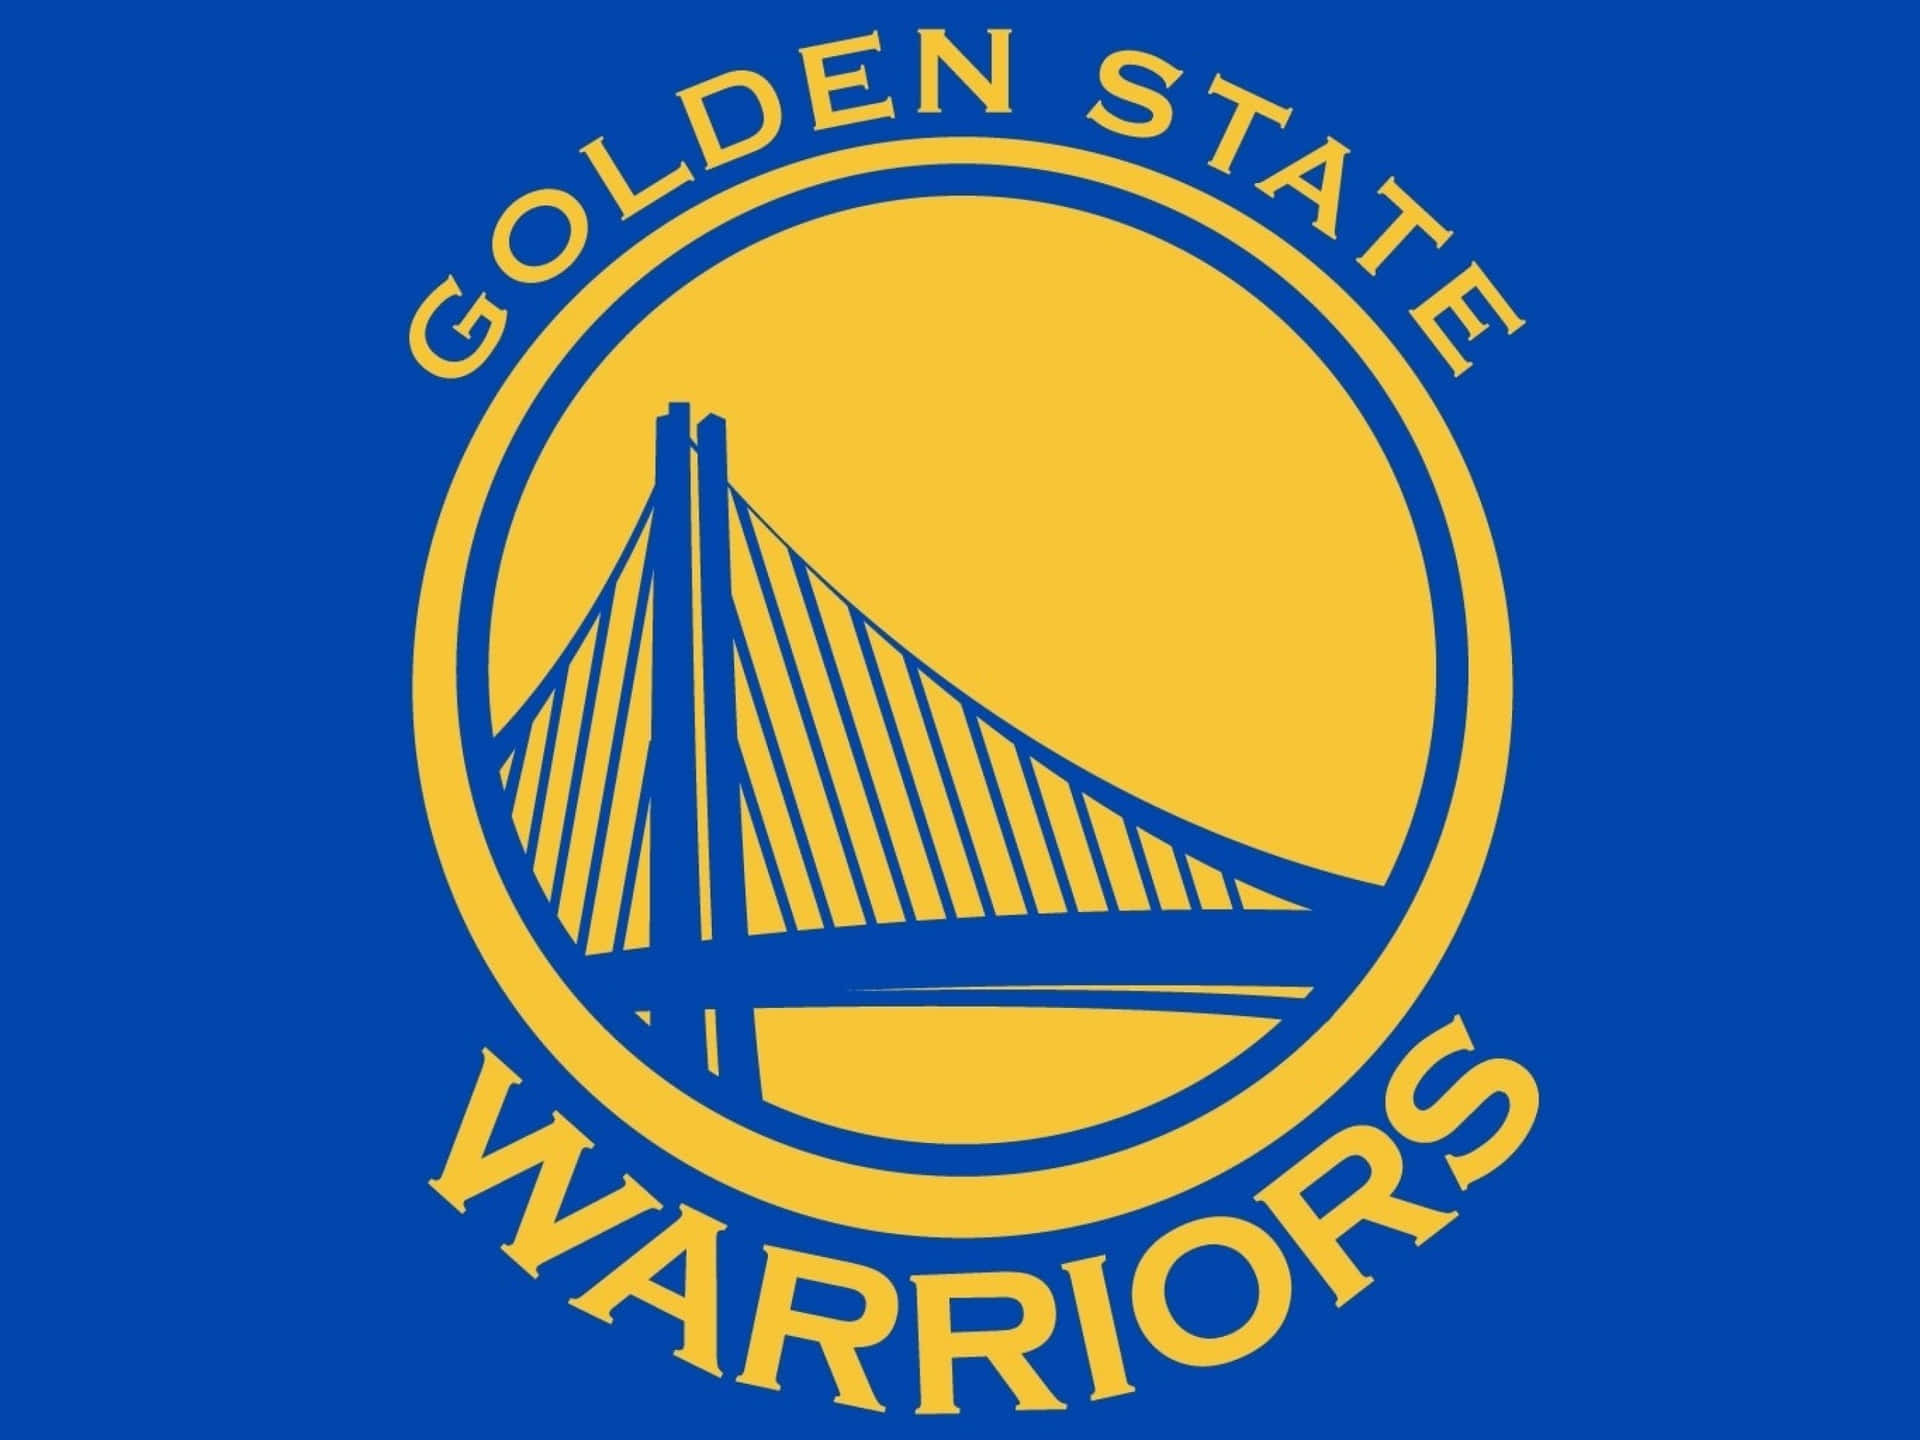 Blåttoch Gult Golden State Warriors-logotyp. Wallpaper